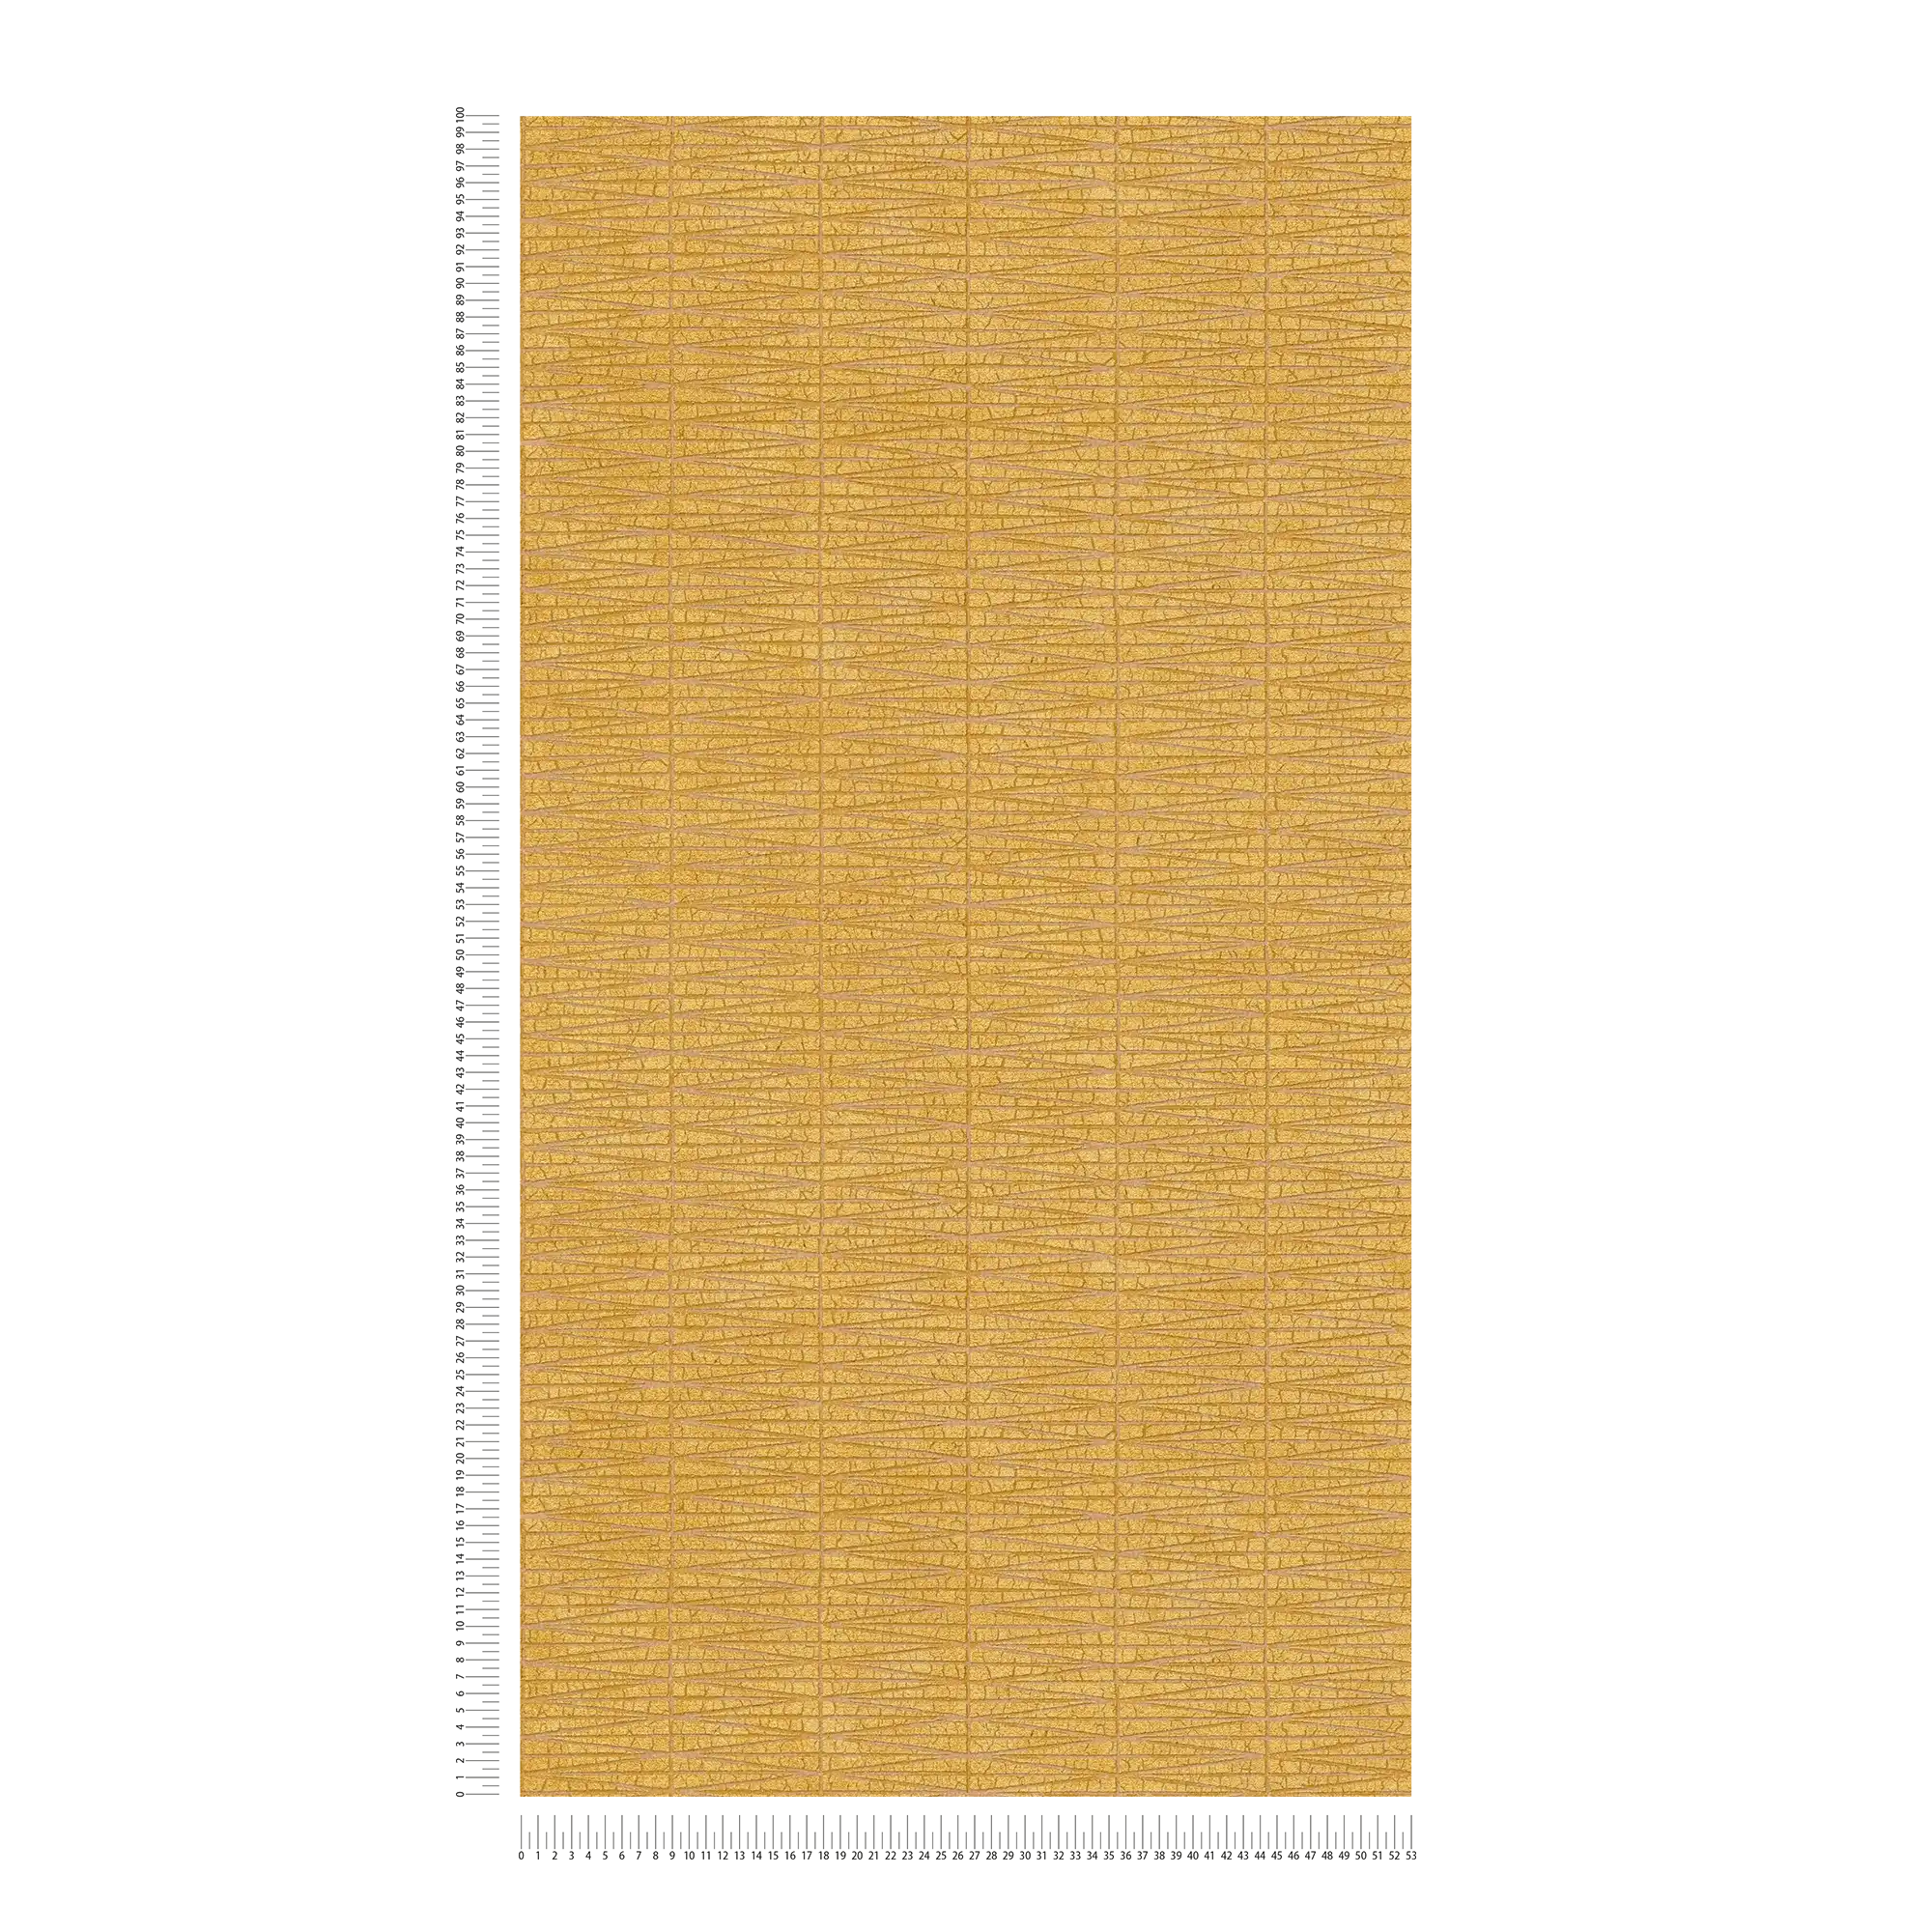             Carta da parati giallo senape con motivo a trama naturale - Giallo, metallizzato
        